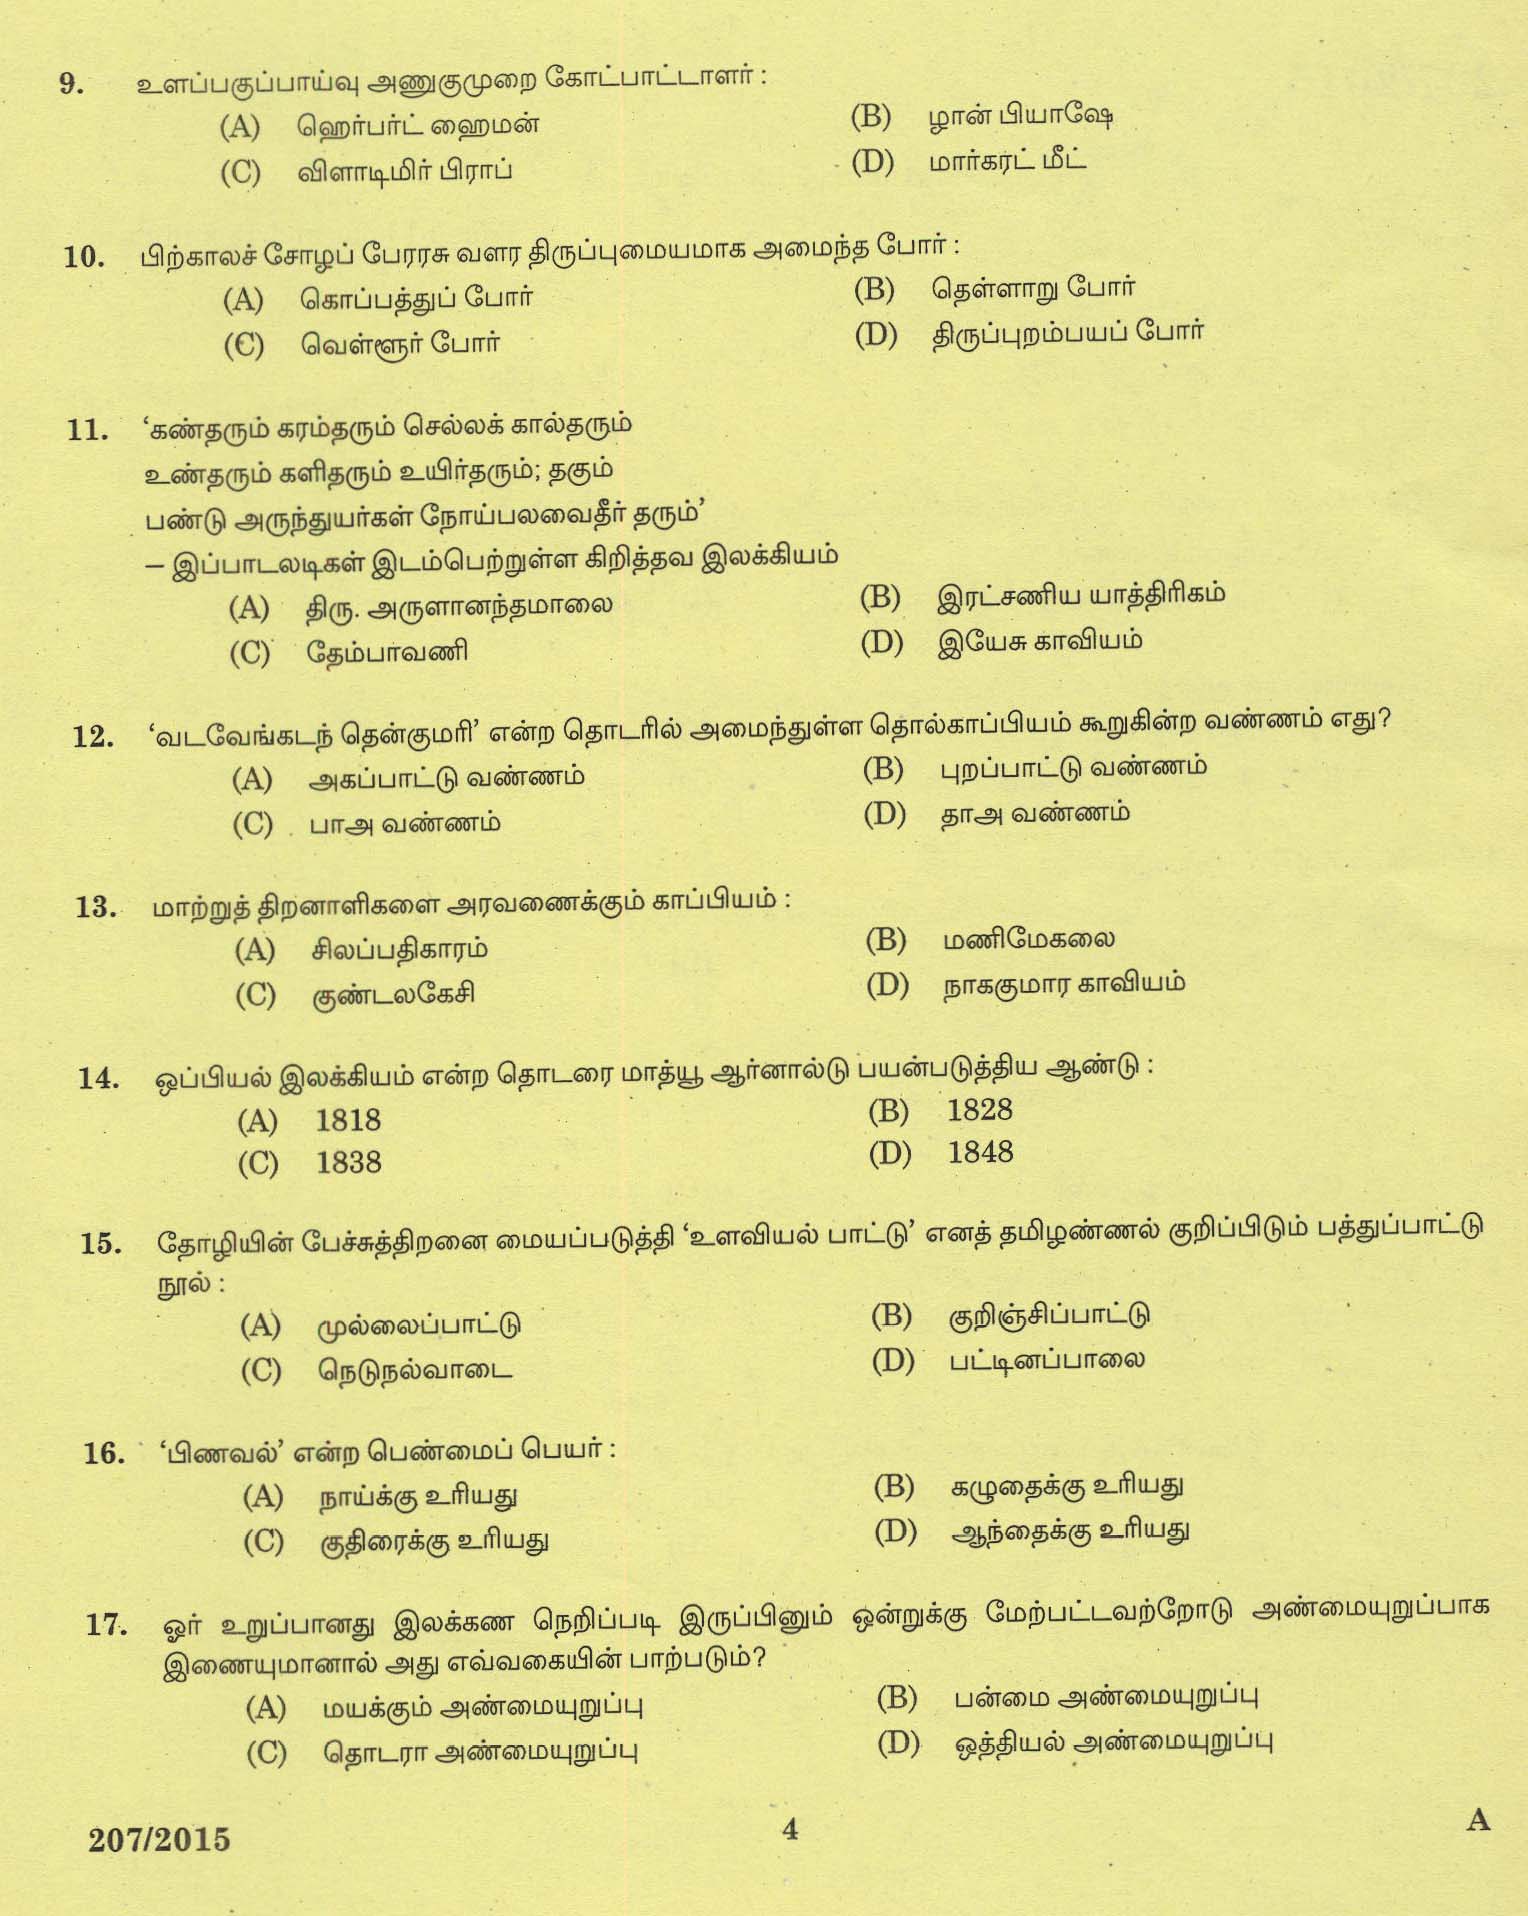 KPSC Lecturer in Tamil Exam 2015 Code 2072015 2